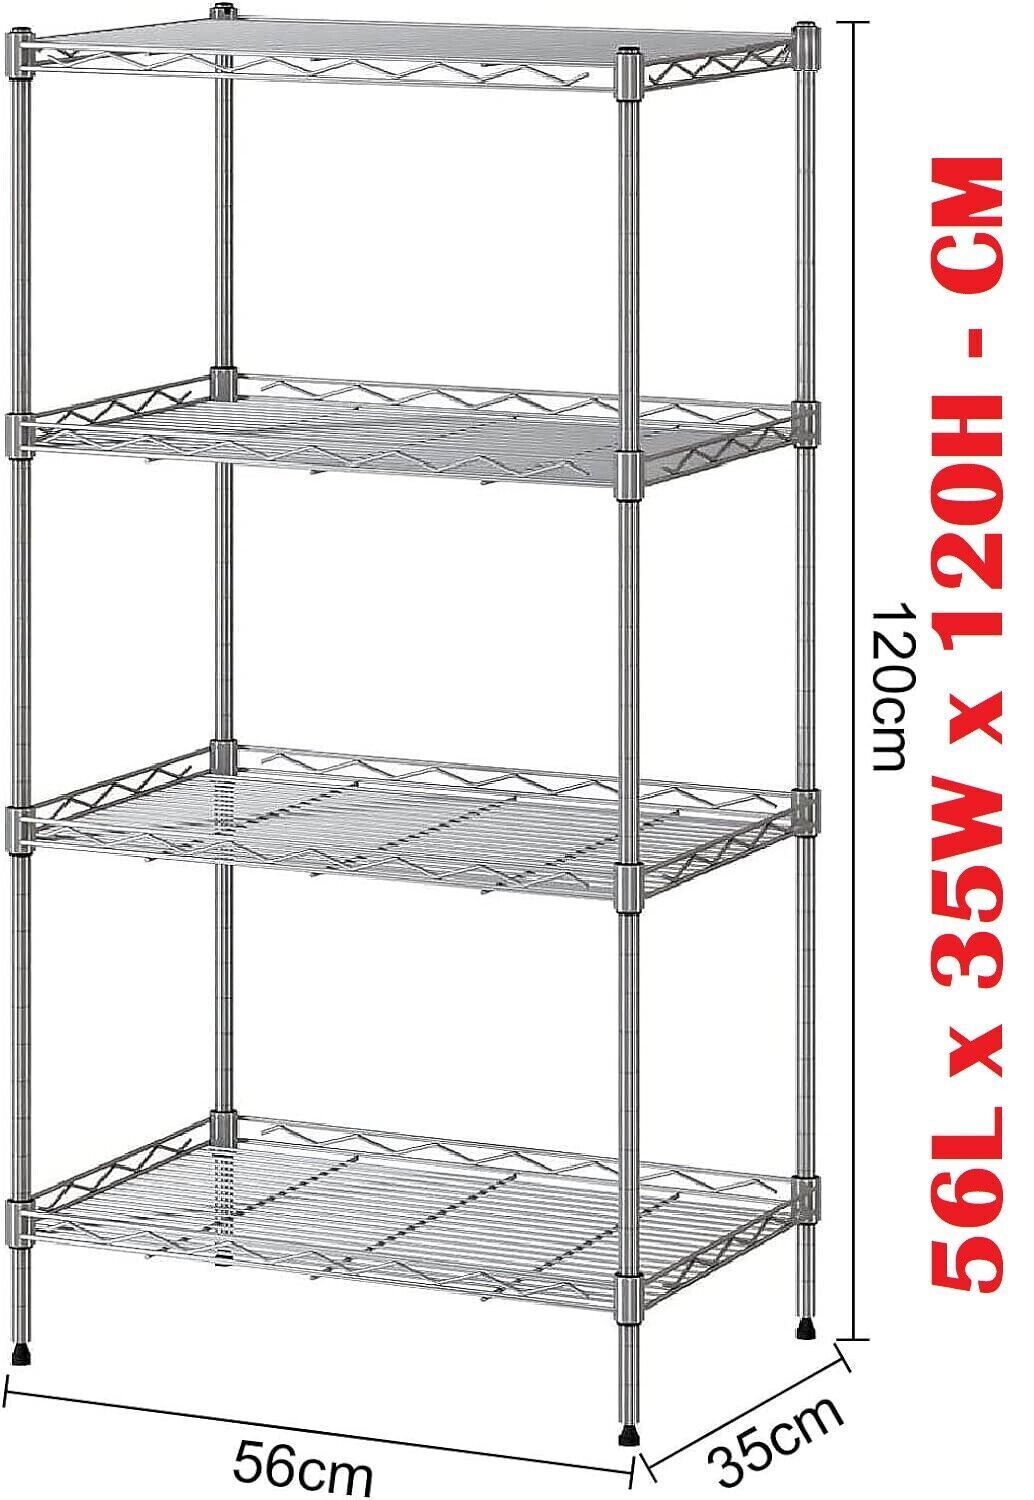 4/5 Tier Metal STORAGE Rack/Shelving Wire Silver Shelf Kitchen /Office /Garage